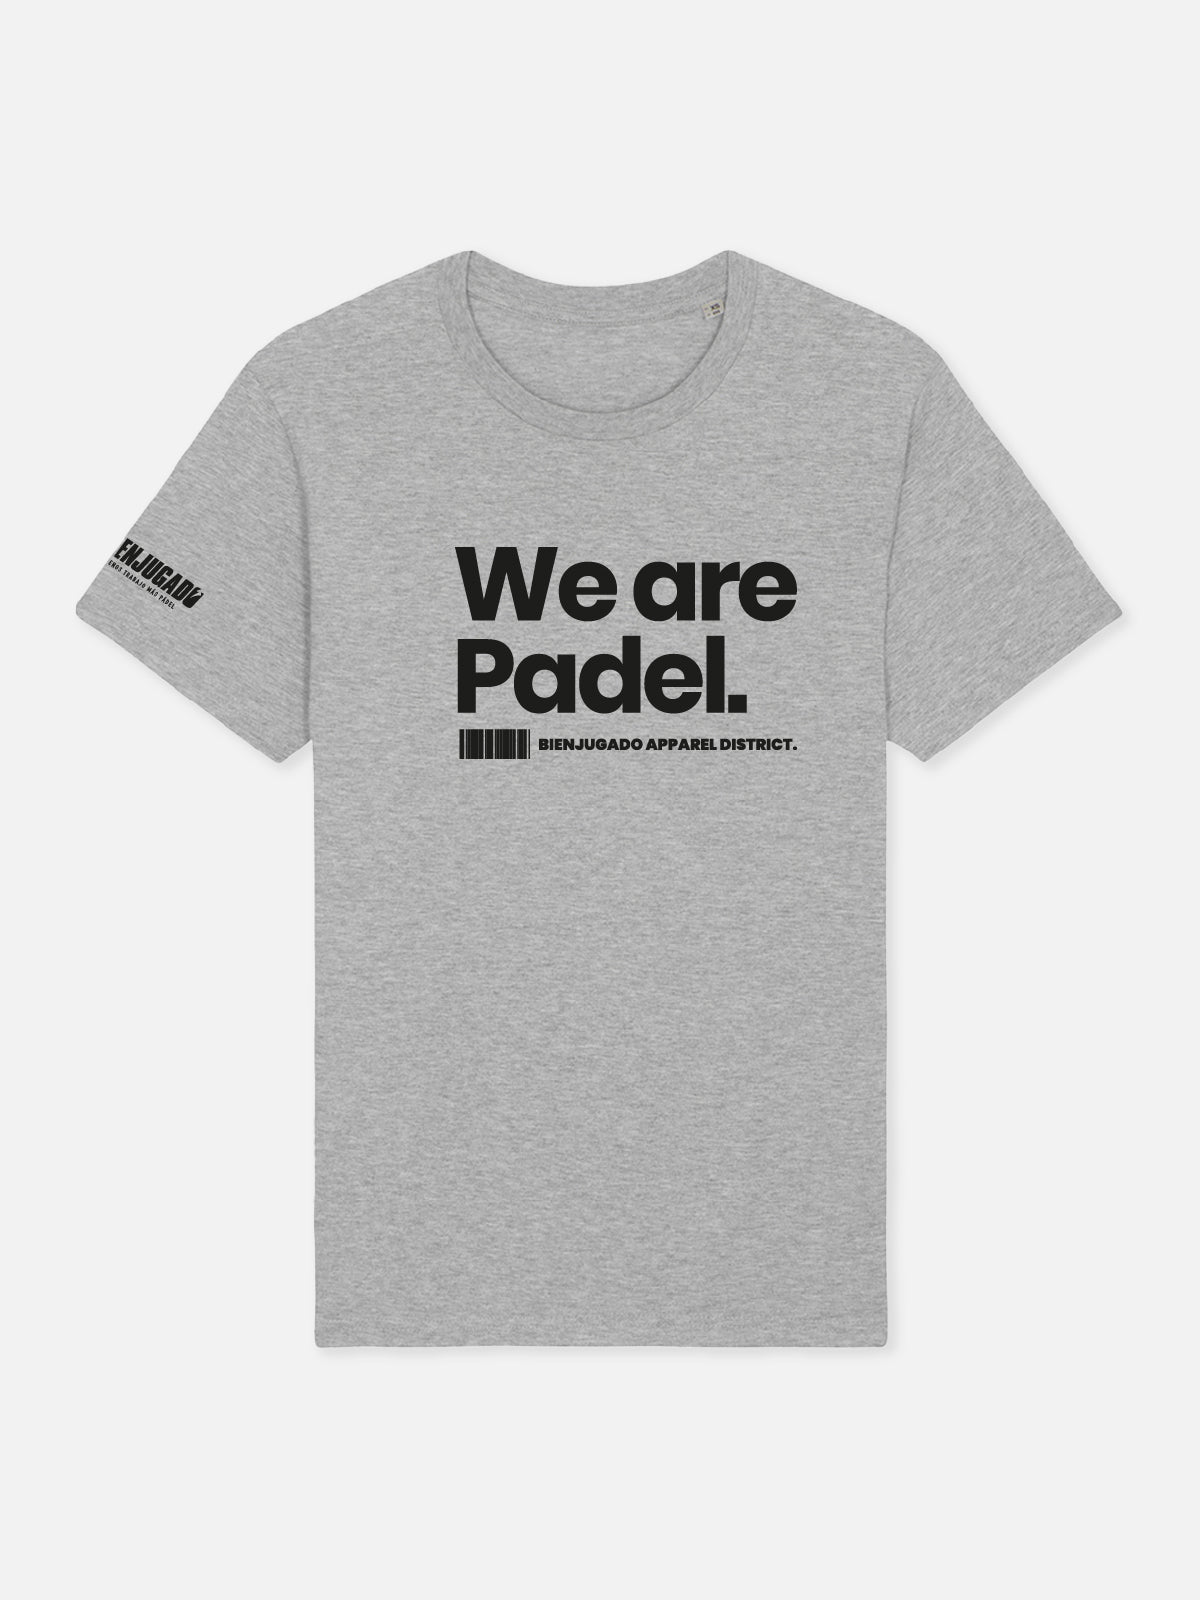 Fun T-Shirt - We Are Padel